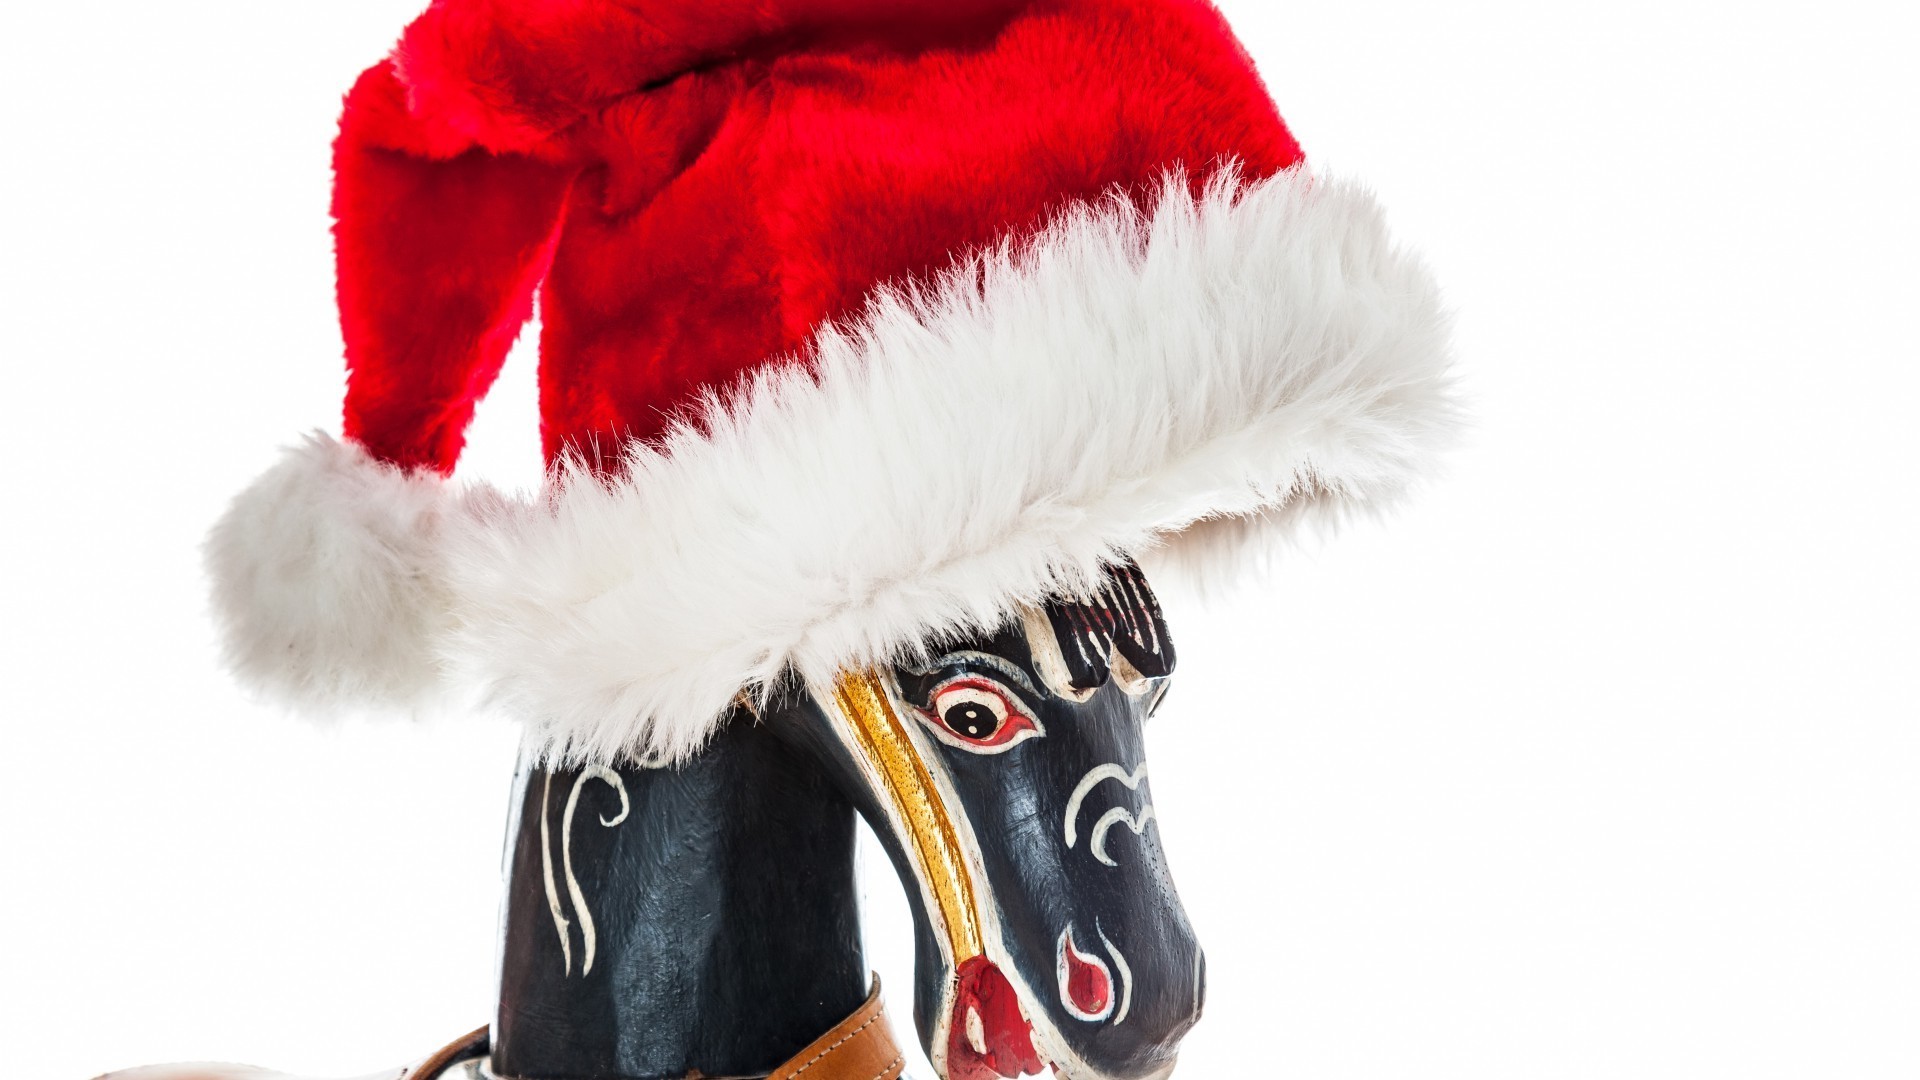 новый год рождество зима мех праздник крышка изолированные подарок костюм крышка традиционные удовольствие